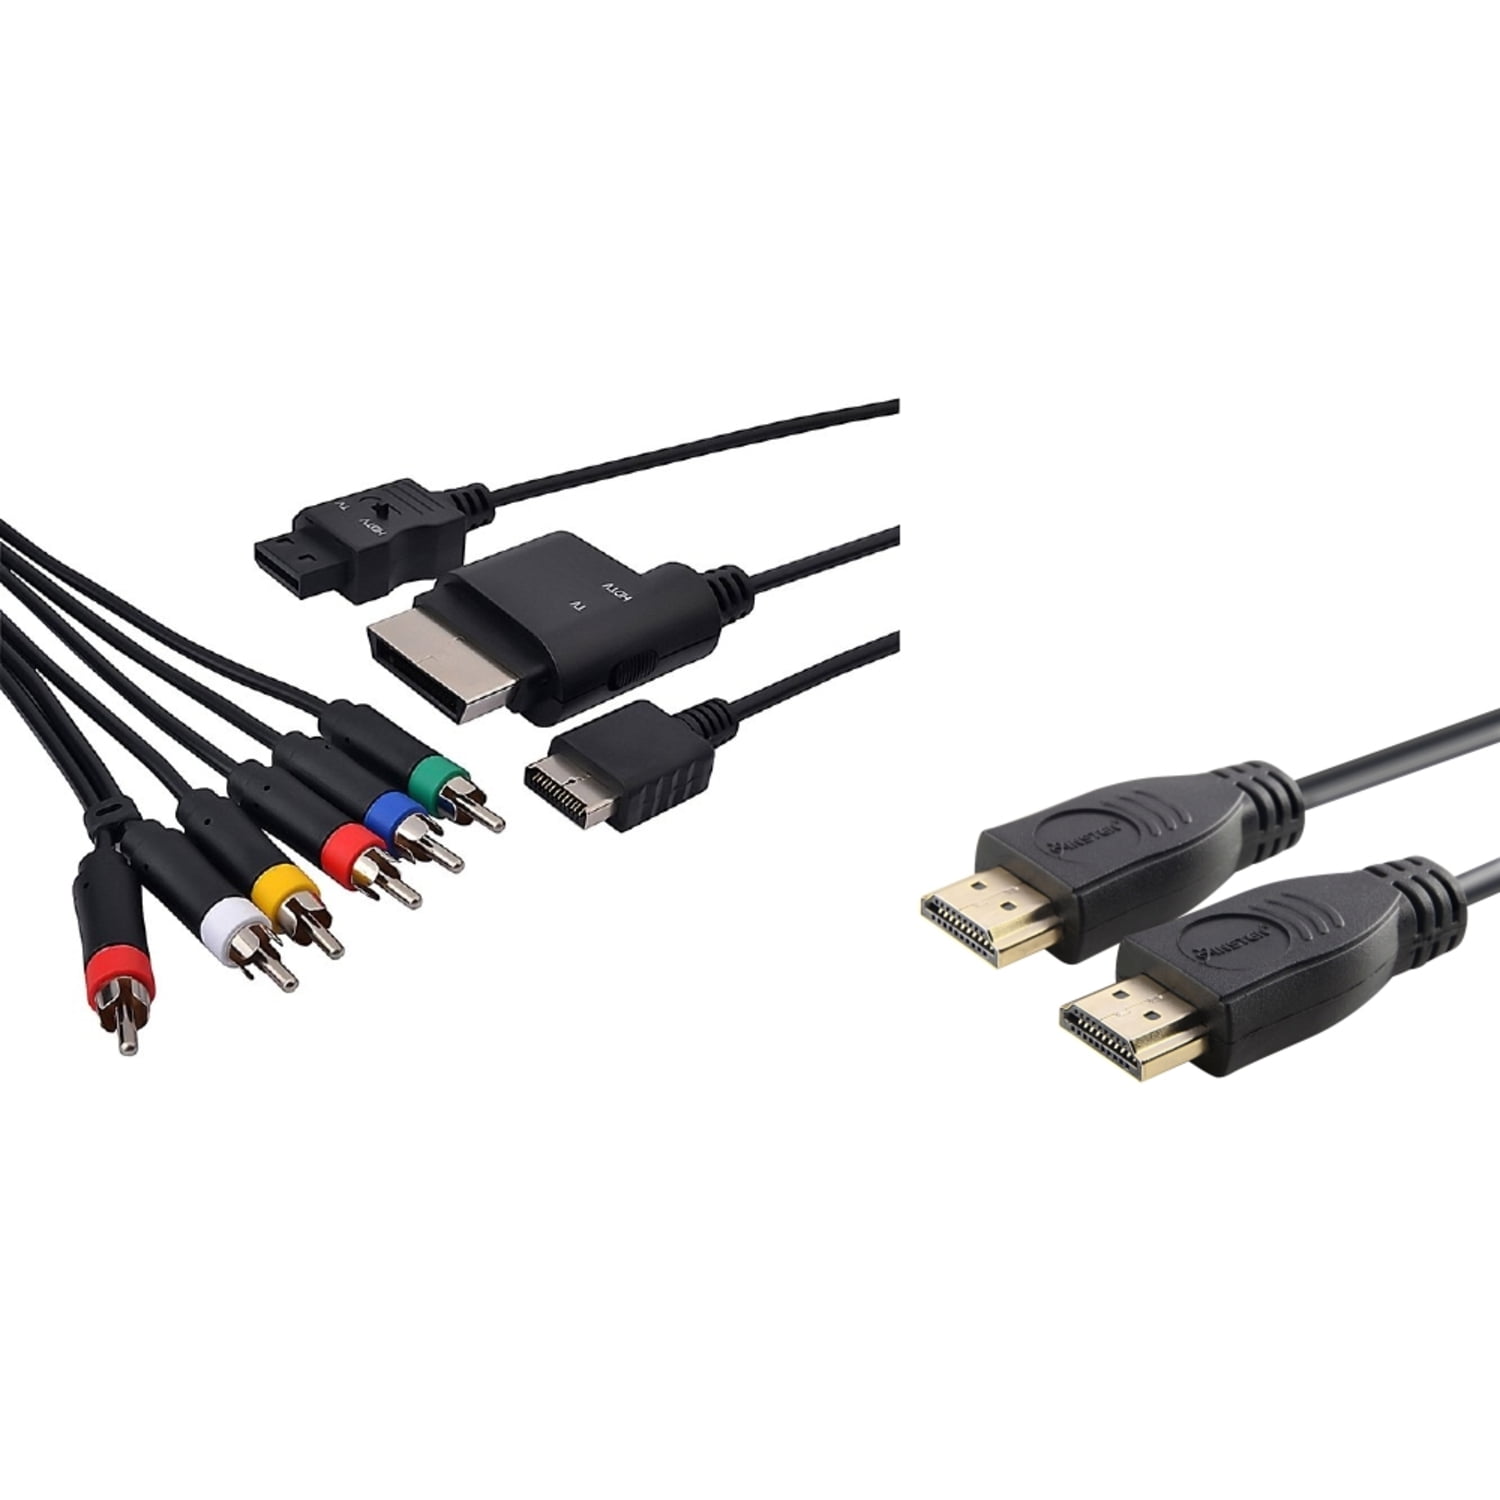 Av Multi out кабель ps3. HDMI кабель Nintendo. Nintendo Wii переходник HDMI. Av Multi out кабель ps3 распиновка. Av multi